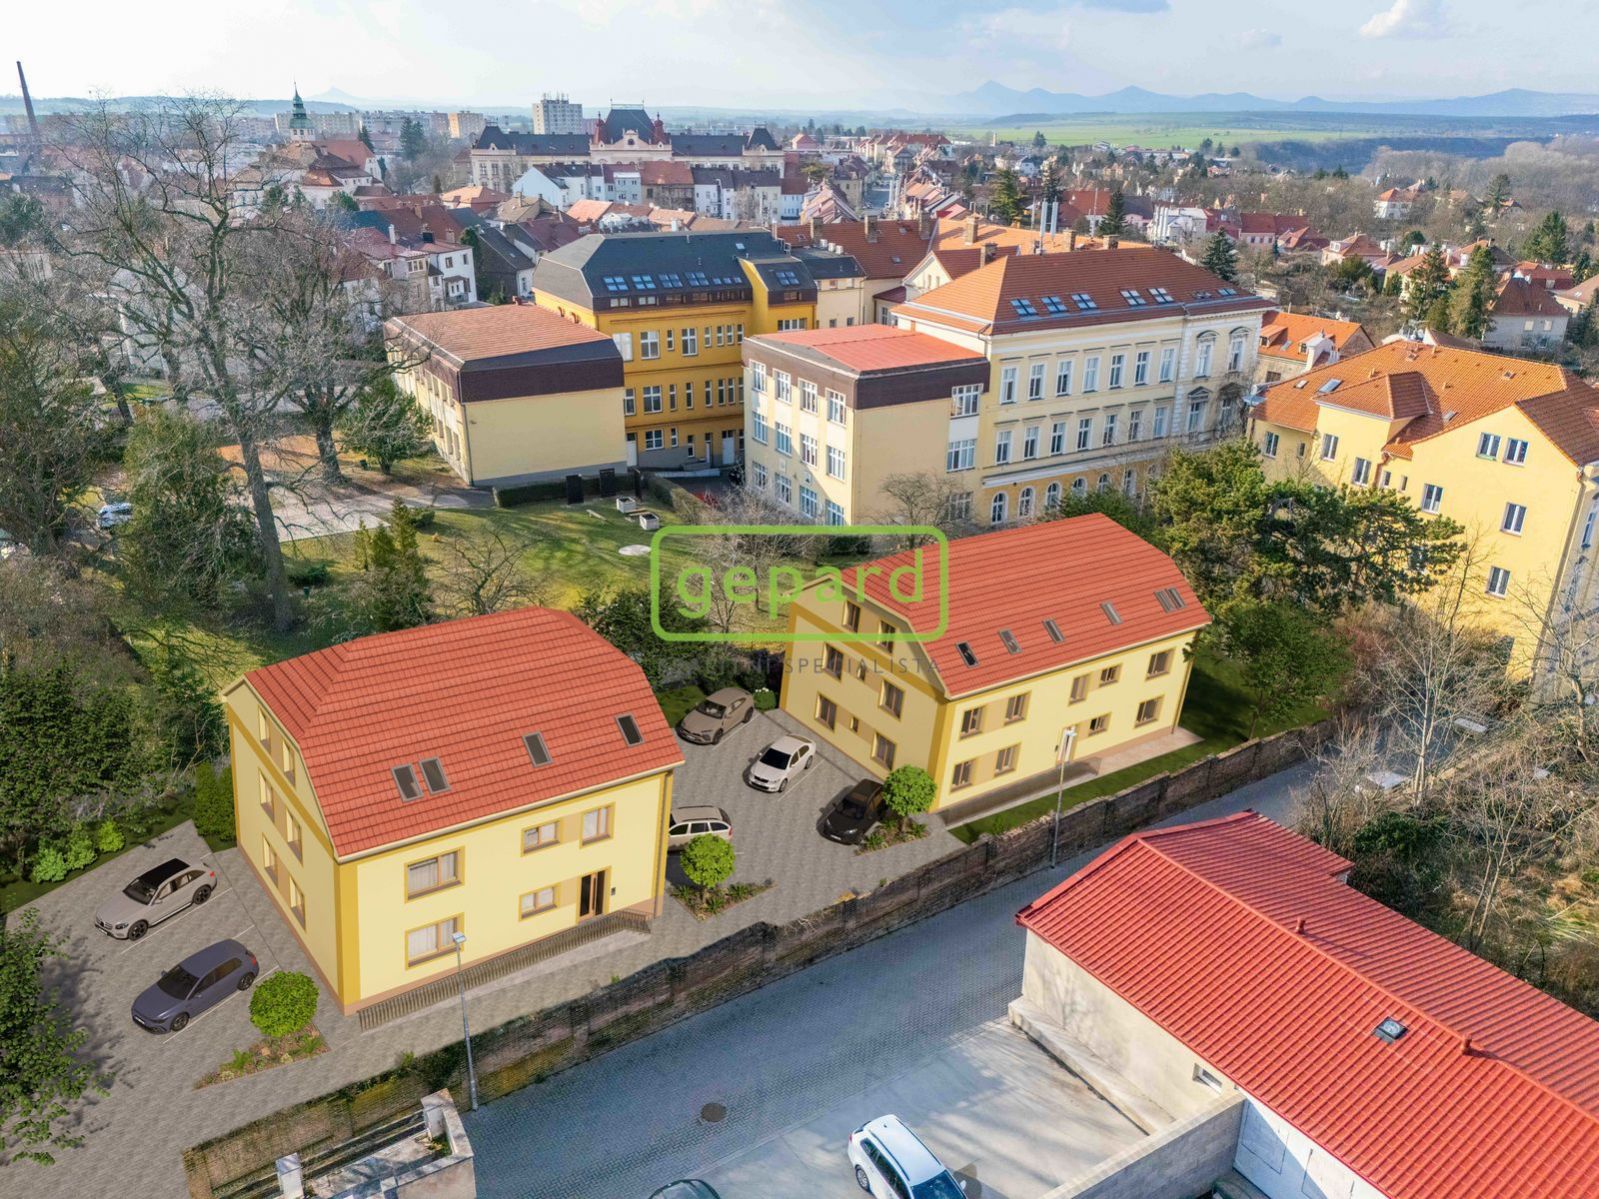 Komerční pozemek k výstavbě 13 bytových jednotek - centrum města Roudnice nad Labem, obrázek č. 1